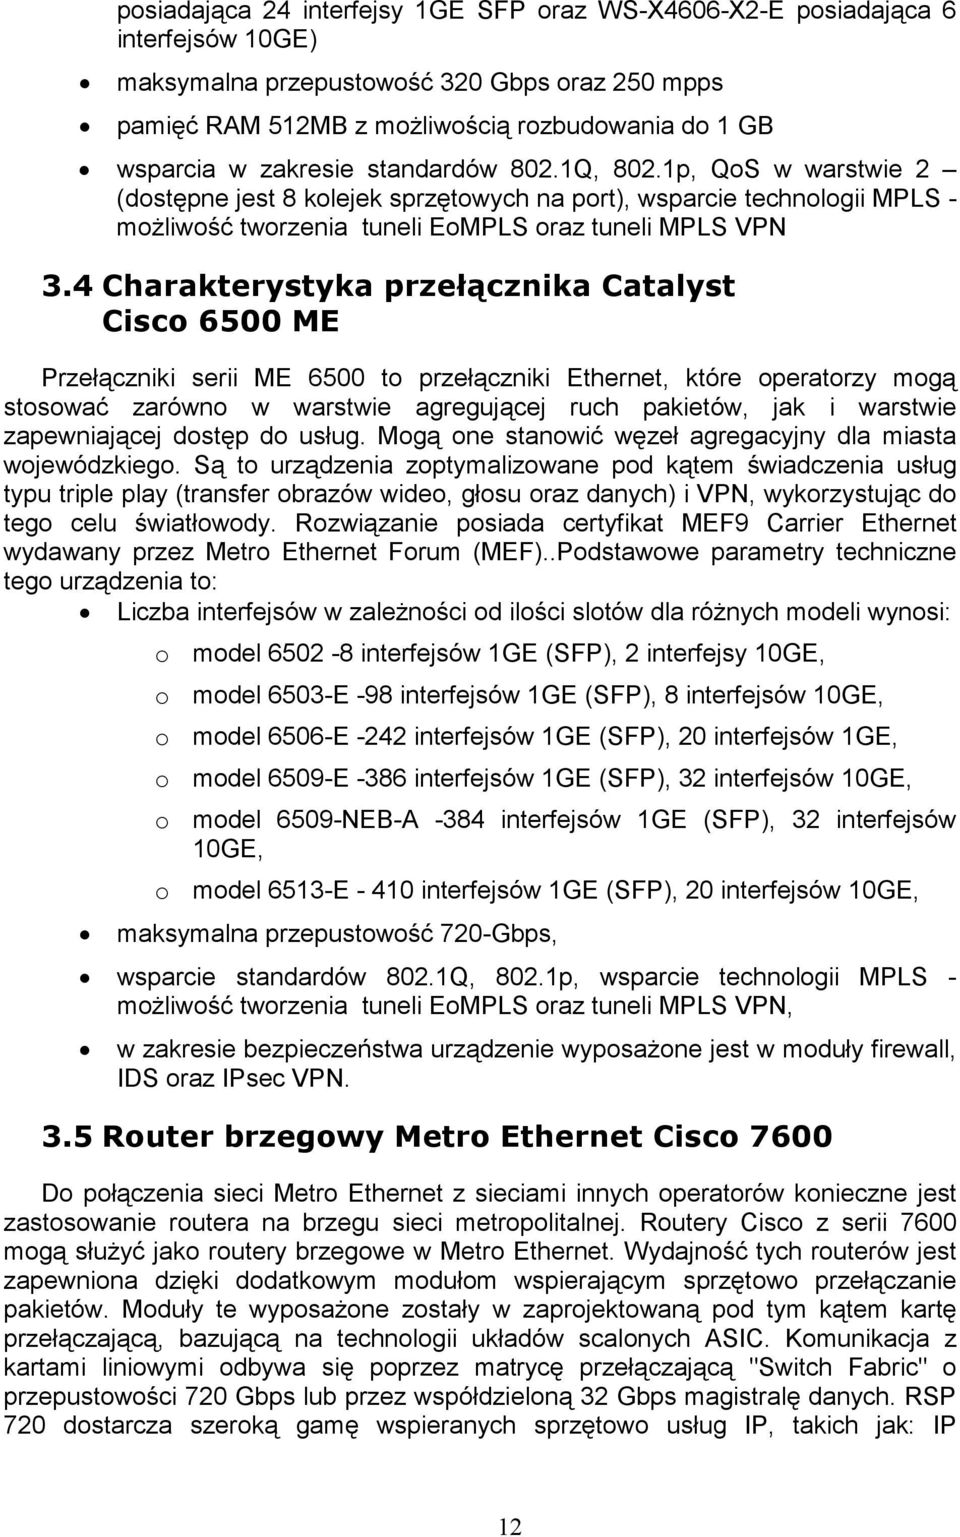 4 Charakterystyka przełącznika Catalyst Cisco 6500 ME Przełączniki serii ME 6500 to przełączniki Ethernet, które operatorzy mogą stosować zarówno w warstwie agregującej ruch pakietów, jak i warstwie